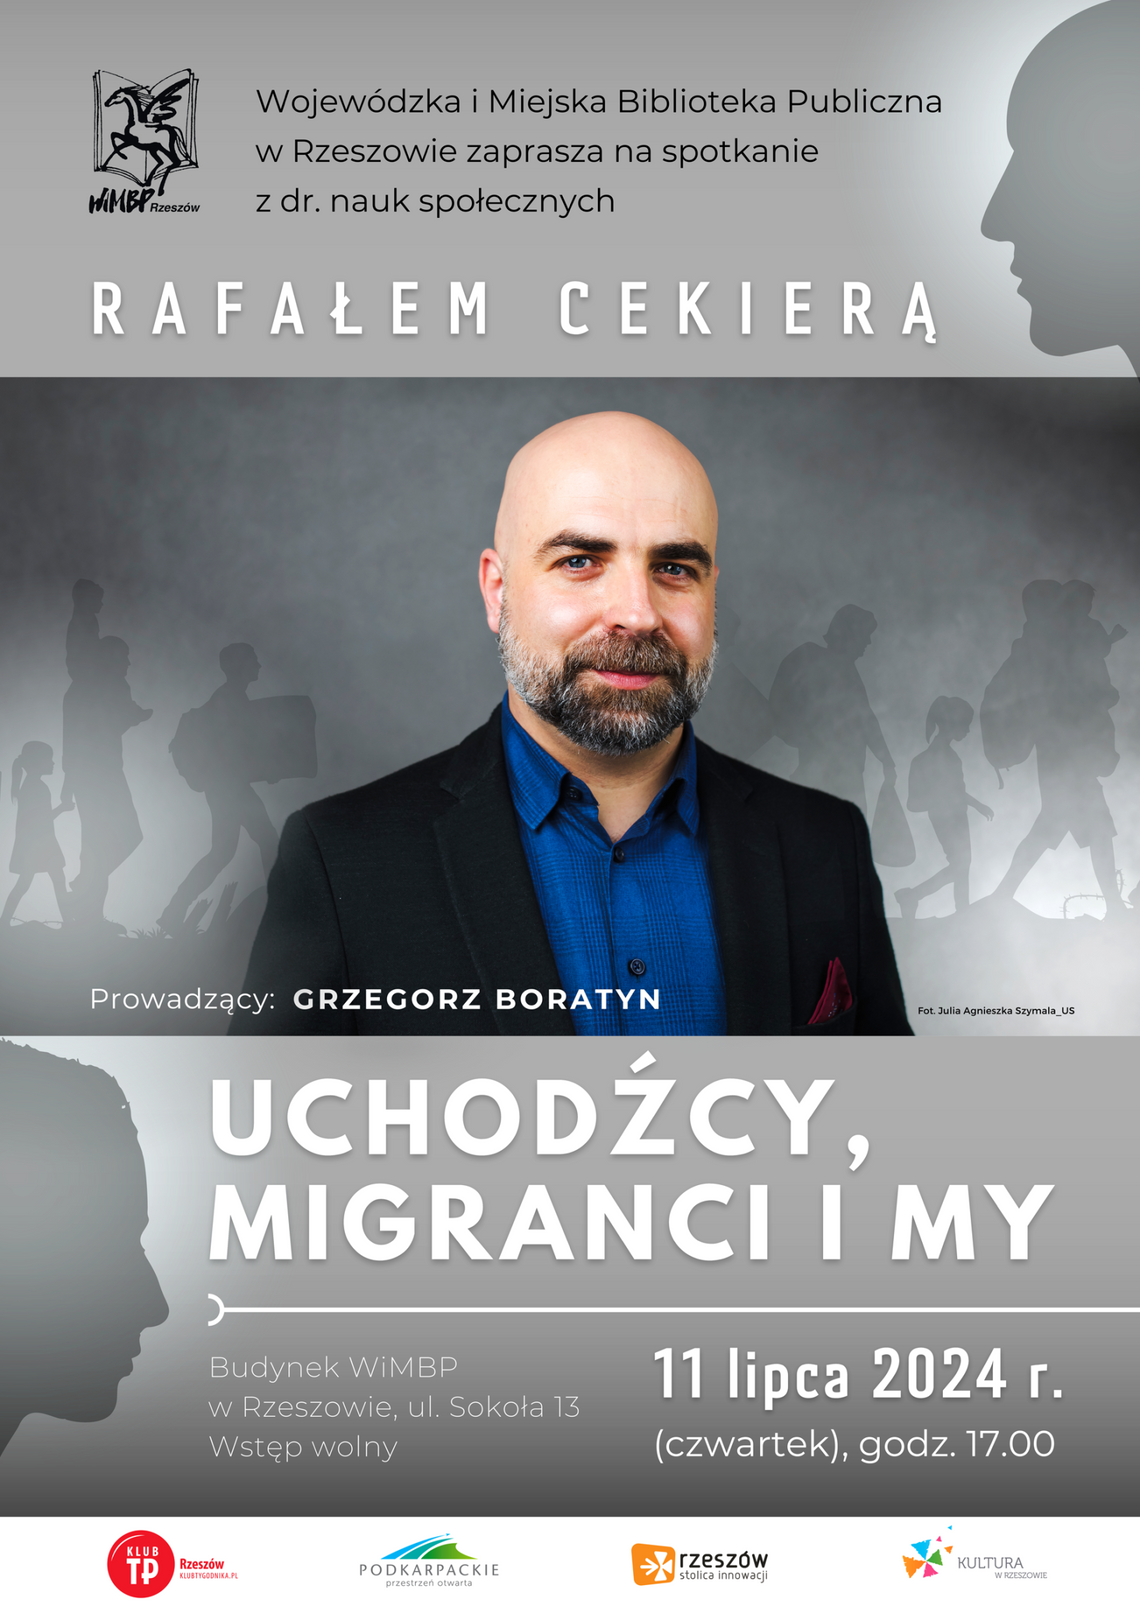 „Uchodźcy, migranci i my”. Spotkanie z dr. nauk społecznych Rafałem Cekierą